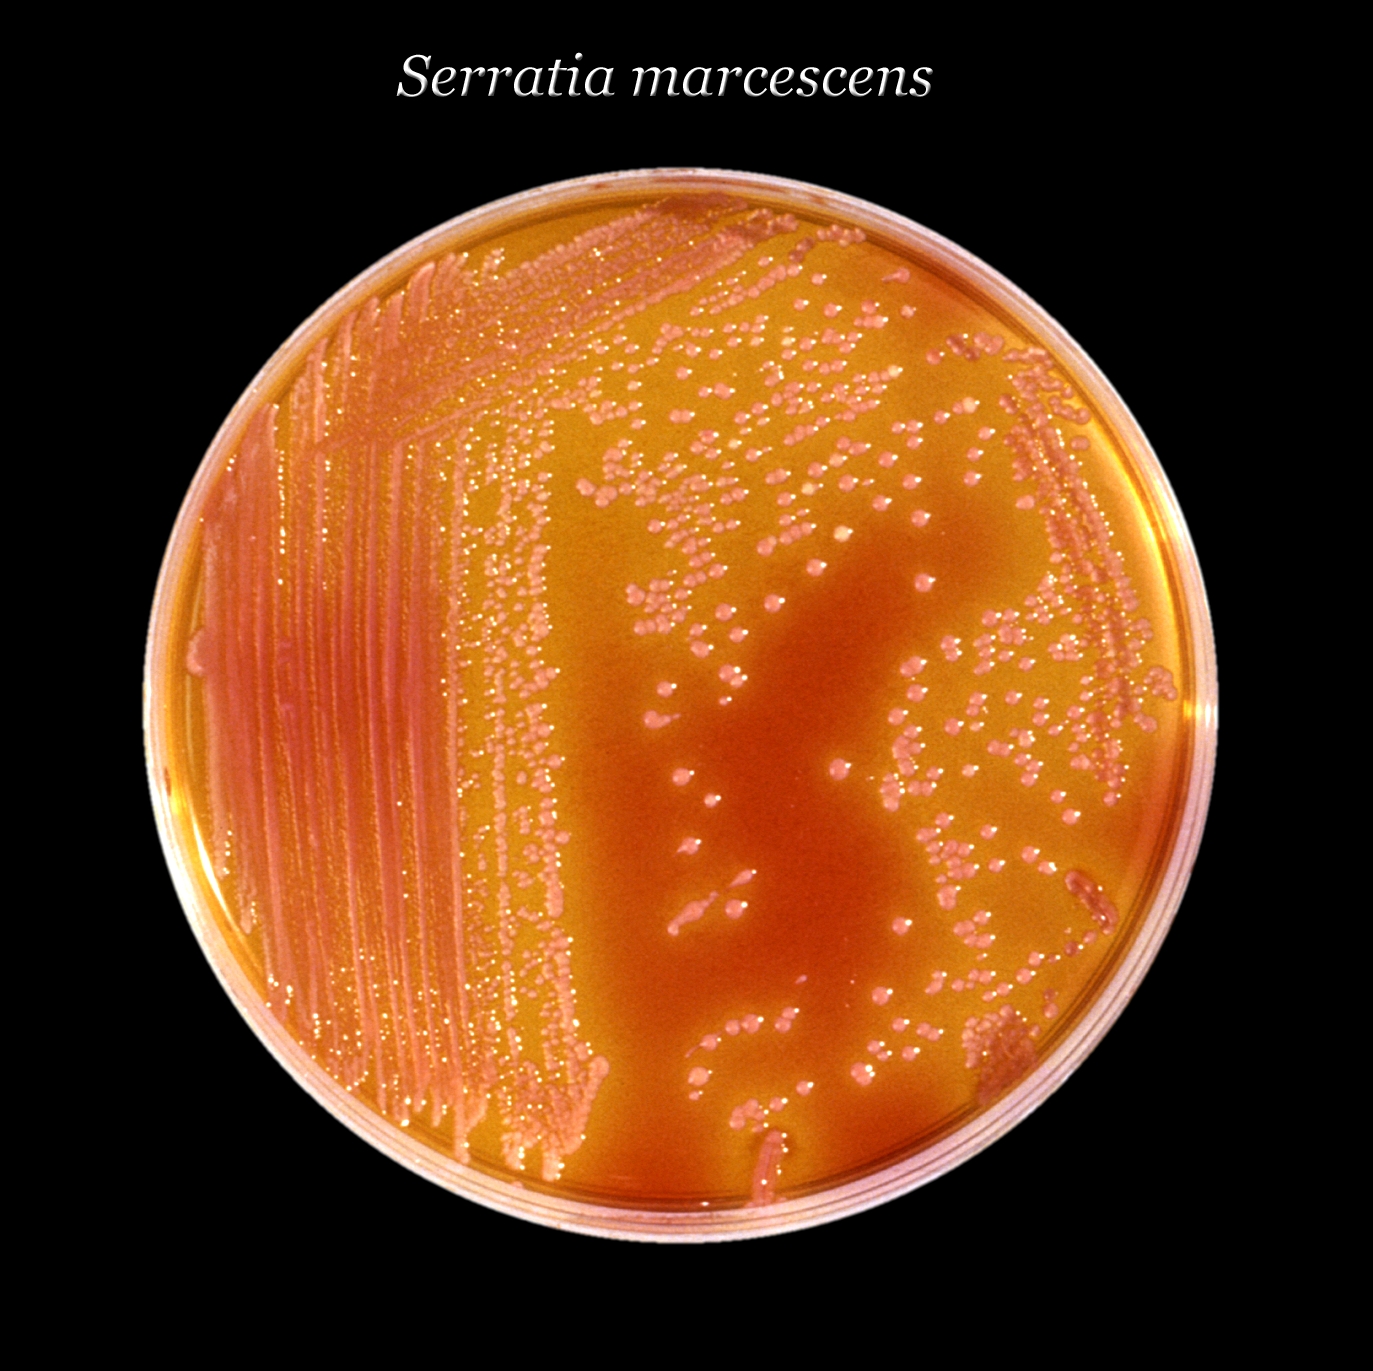 Kolonie bakterie Serratia marcescens (zde na agaru), dokĂˇĹľe napadat sliznice zaĹľĂ­vacĂ­ho, dĂ˝chacĂ­ho i moÄŤovĂ©ho ĂşstrojĂ­. BĂ˝vĂˇ ÄŤastĂ˝m hostem sprch, toalet a zvlĂˇĹˇtÄ› dÄ›tĹˇtĂ­ pacienti si ji rĂˇdi nosĂ­ jako komplikaci, z nemocnice domĹ